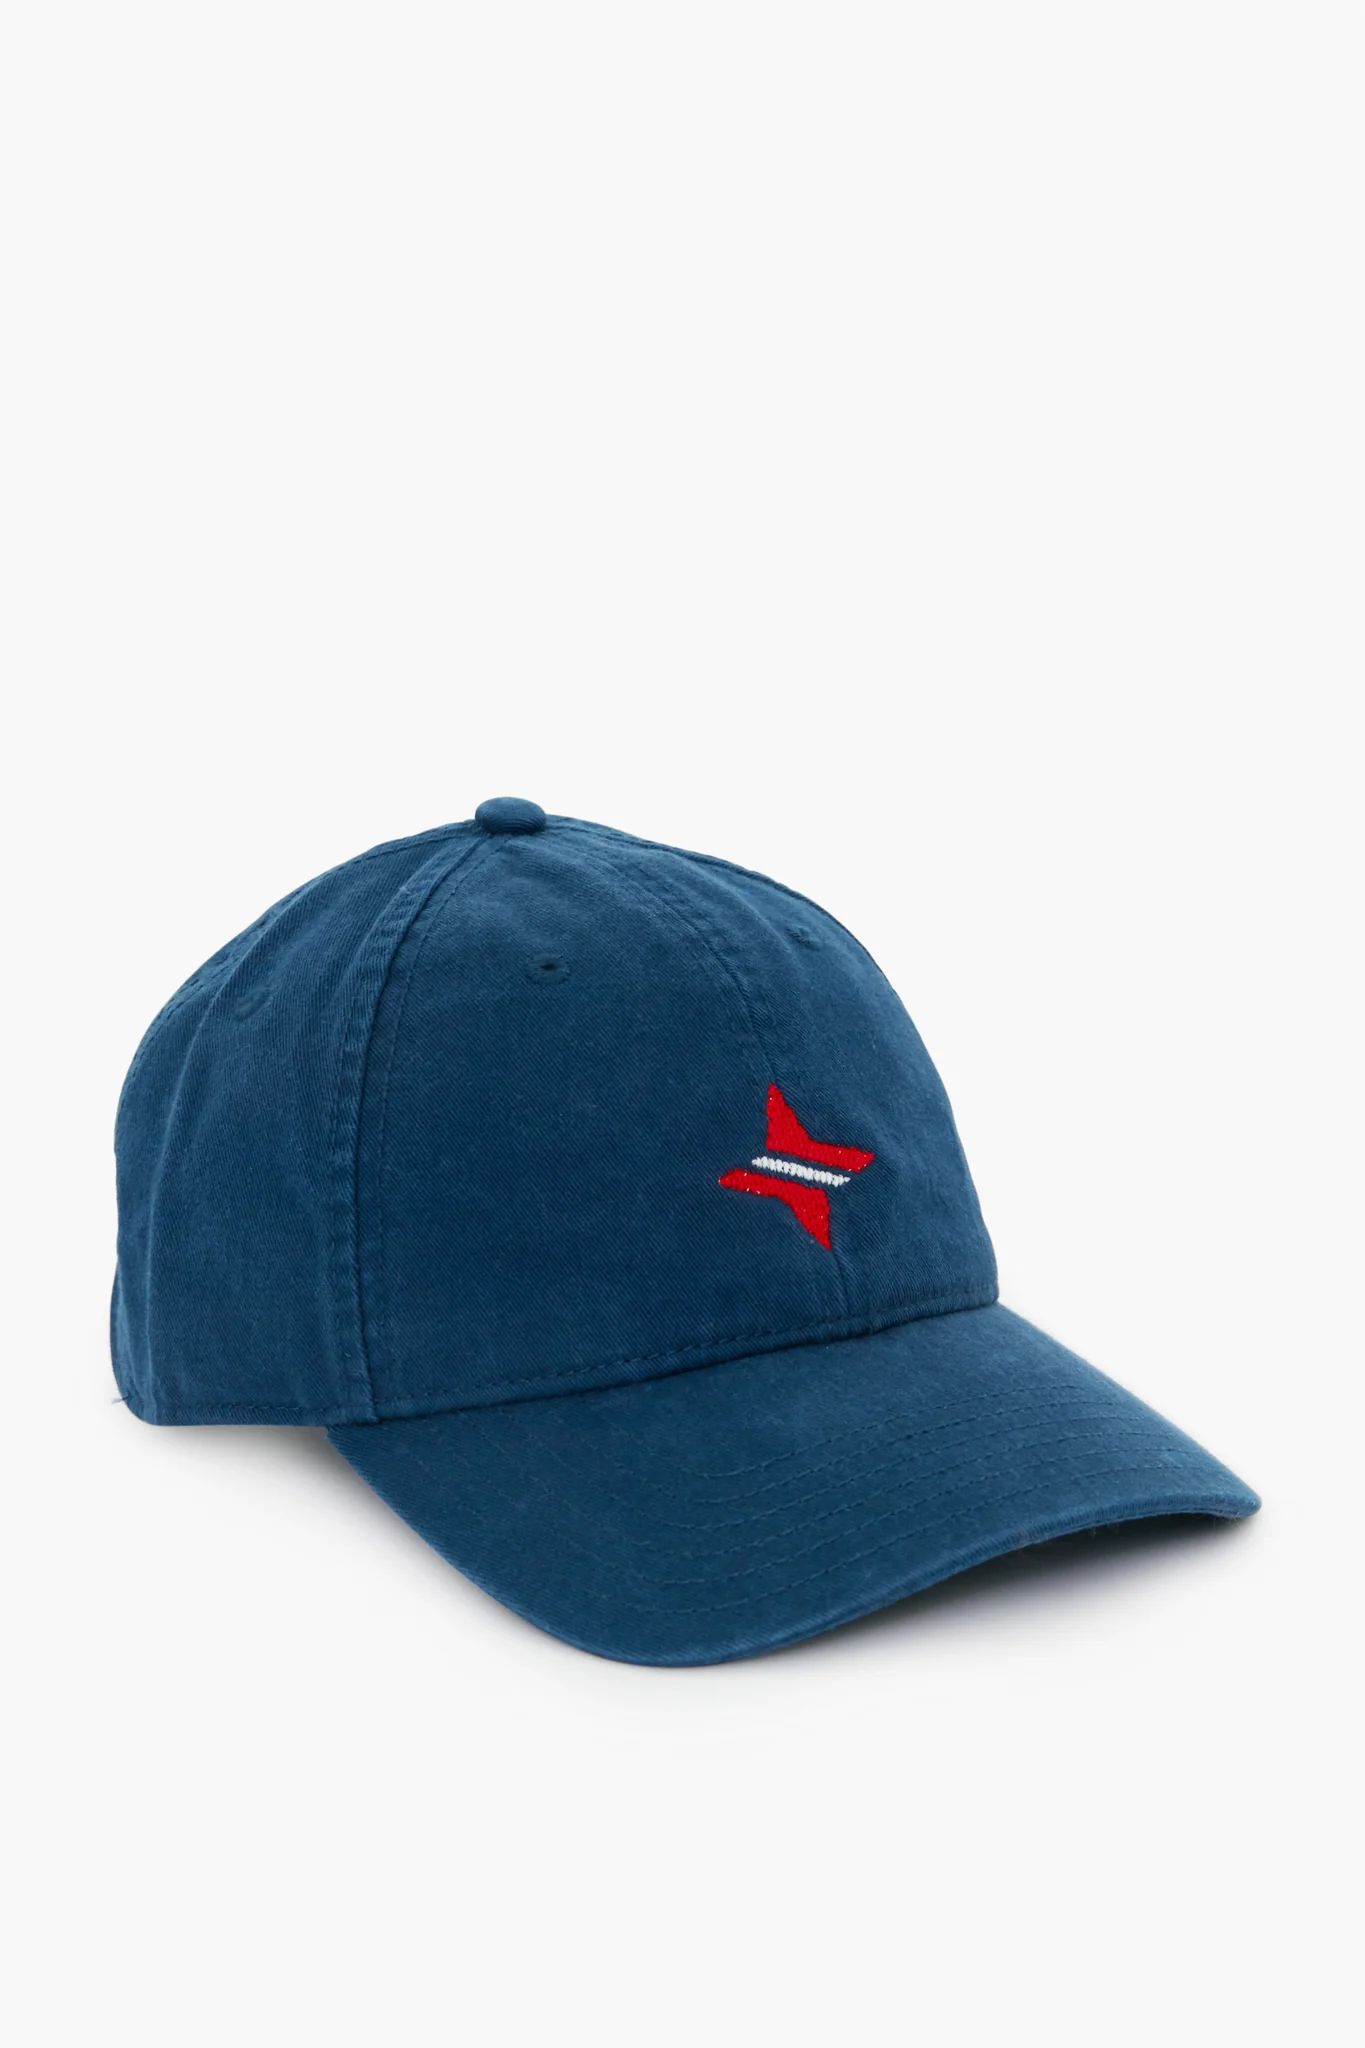 Navy Americana Tuckernuck Hat | Tuckernuck (US)